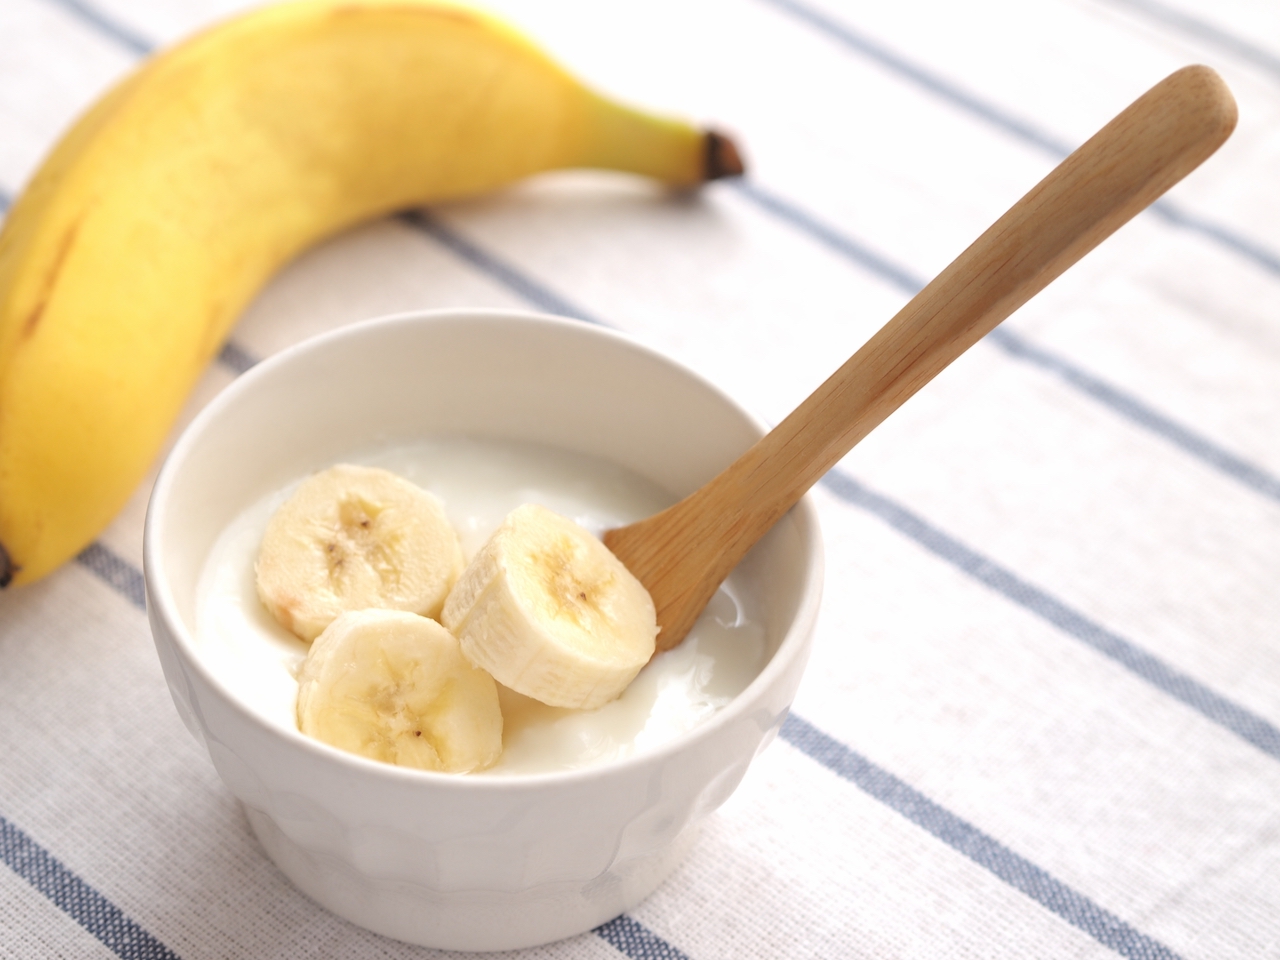 バナナは毎日食べると太る 筋トレやランニングとの相性は バナナの効果や栄養素を栄養士にとことん聞いた 健康 スポーツ Melos